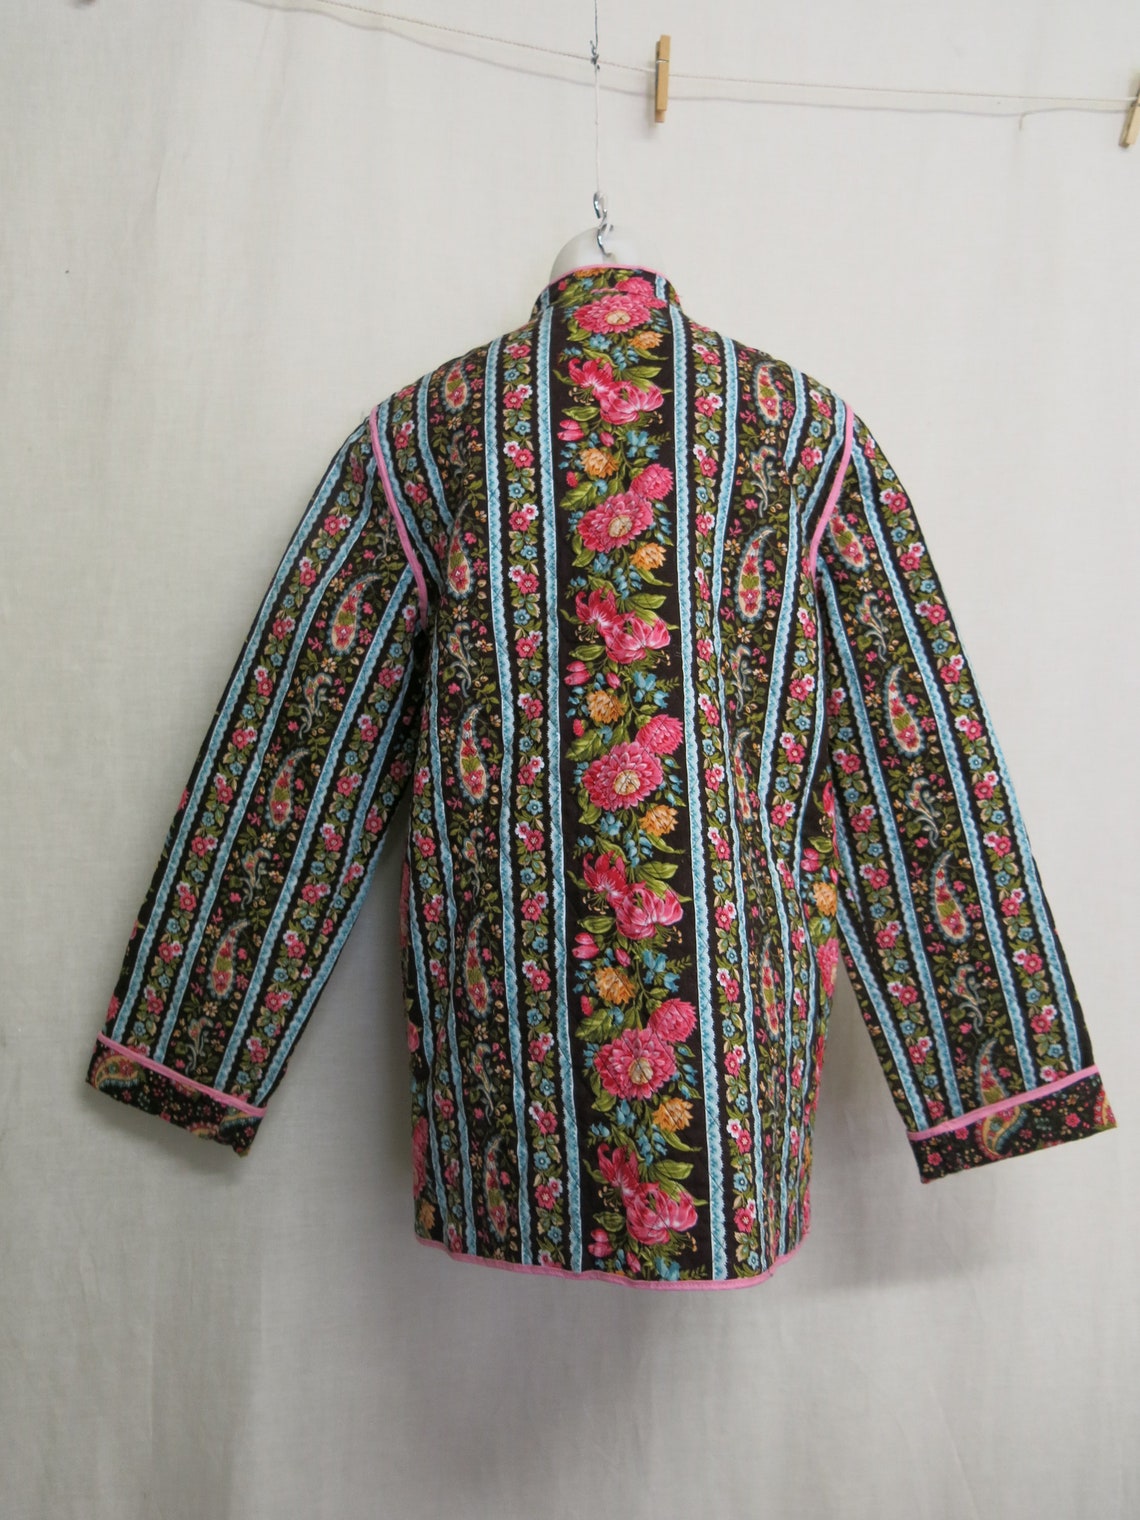 Quilted Jacket Artisan OOAK Peasant Jacket Asian Boho Jacket - Etsy UK